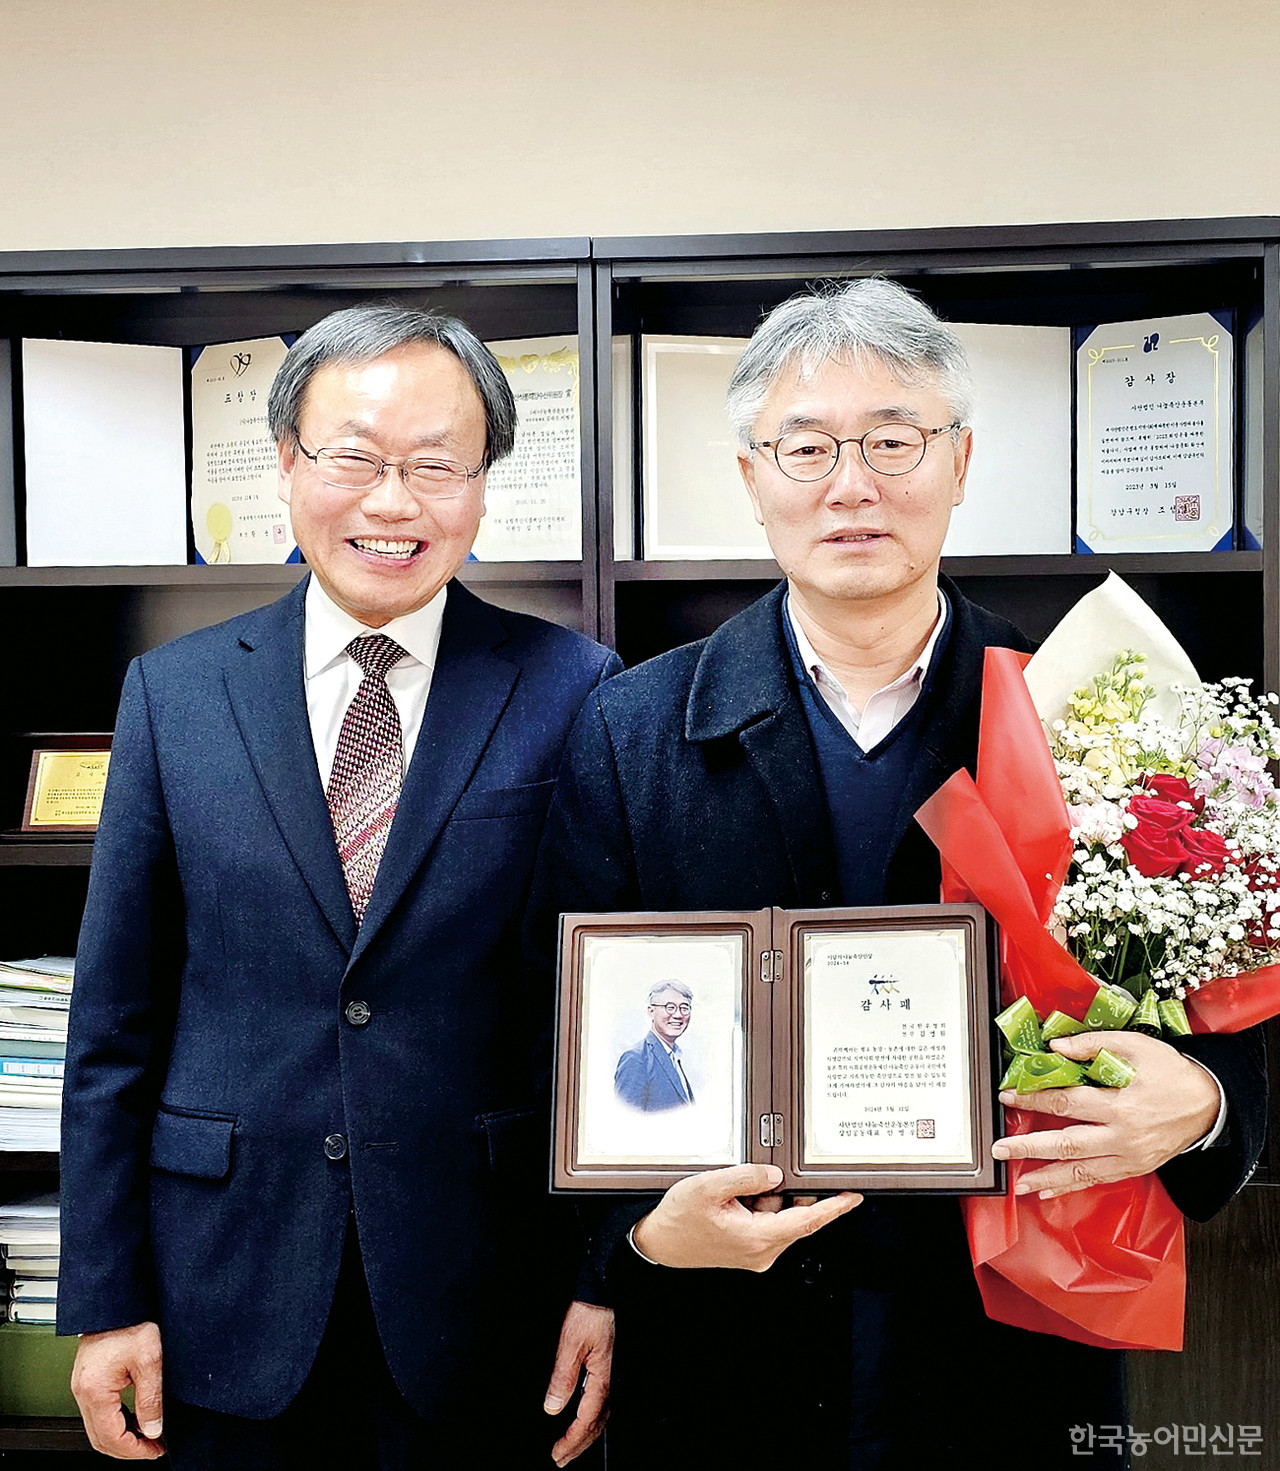 지난 12일 나눔축산운동본부 '이달의 나눔축산인상' 수상자로 선정된 김영원 전국한우협회 전무(오른쪽)가  안승일 사무총장으로부터 감사패를 전달받았다.  